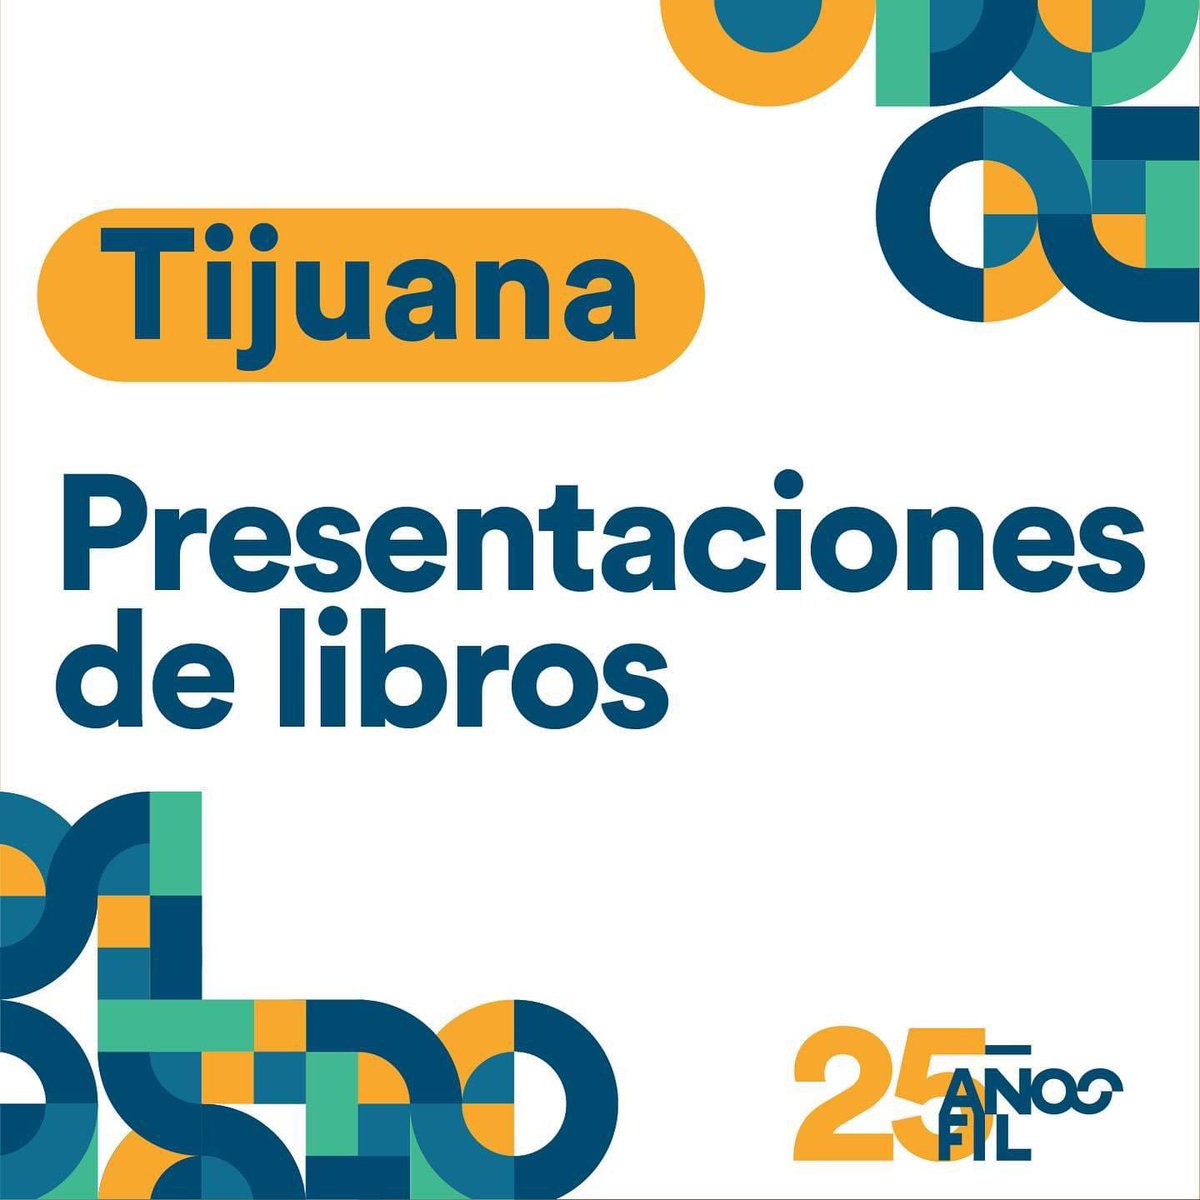 📣🤩 ¡Tijuana! Conoce las presentaciones de libro que se llevarán a cabo en tu ciudad. 📆 Te esperamos del 14 al 17 de marzo. Encuentra más información en nuestro sitio web 👉 filuabc.mx